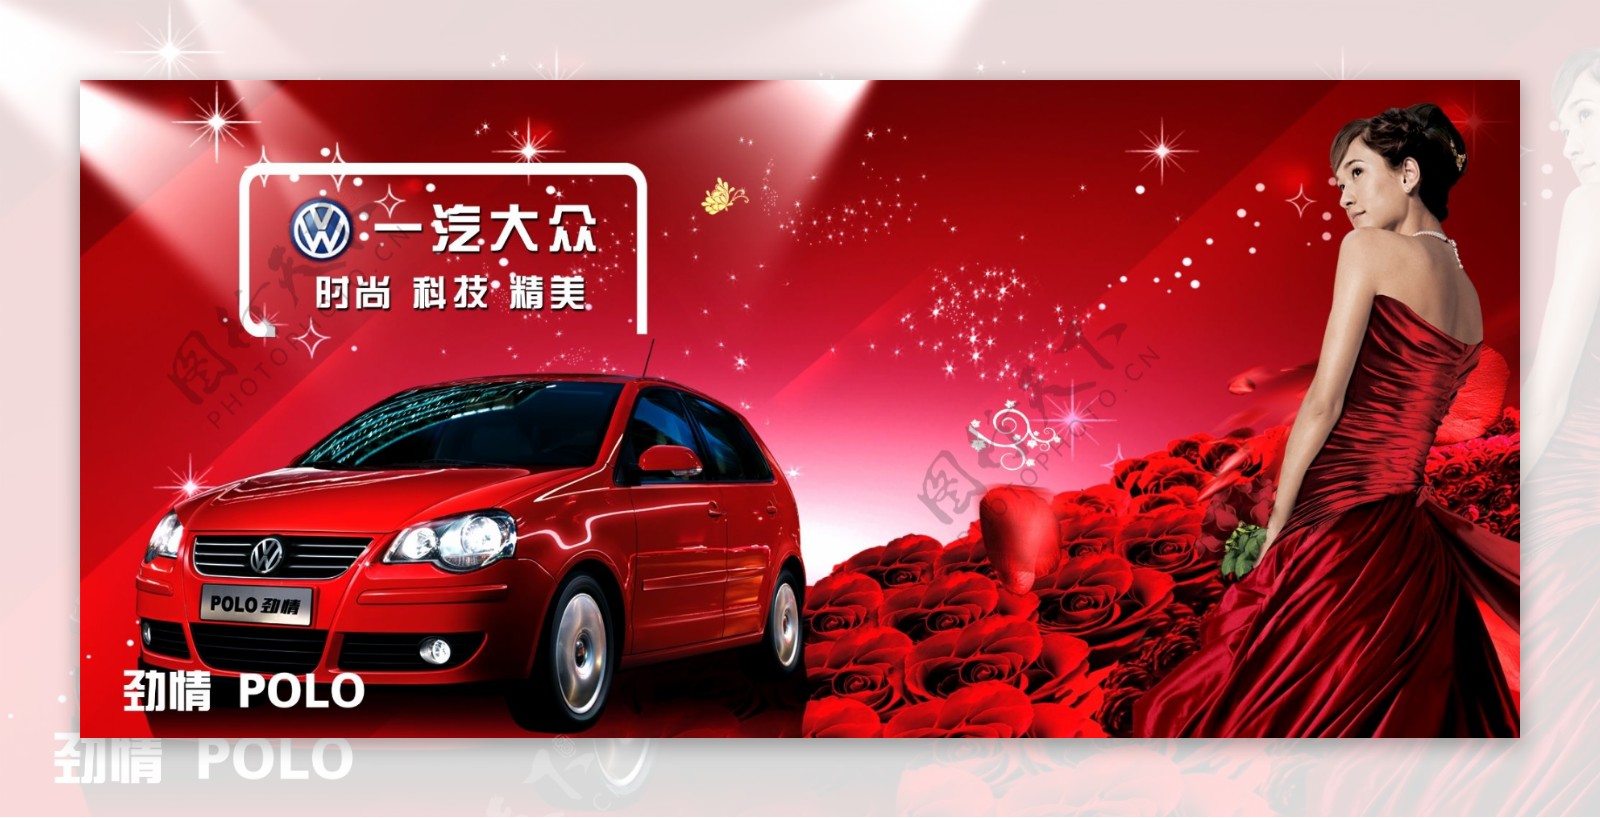 上海一汽大众大众polo大众汽车宣传广告牌图片